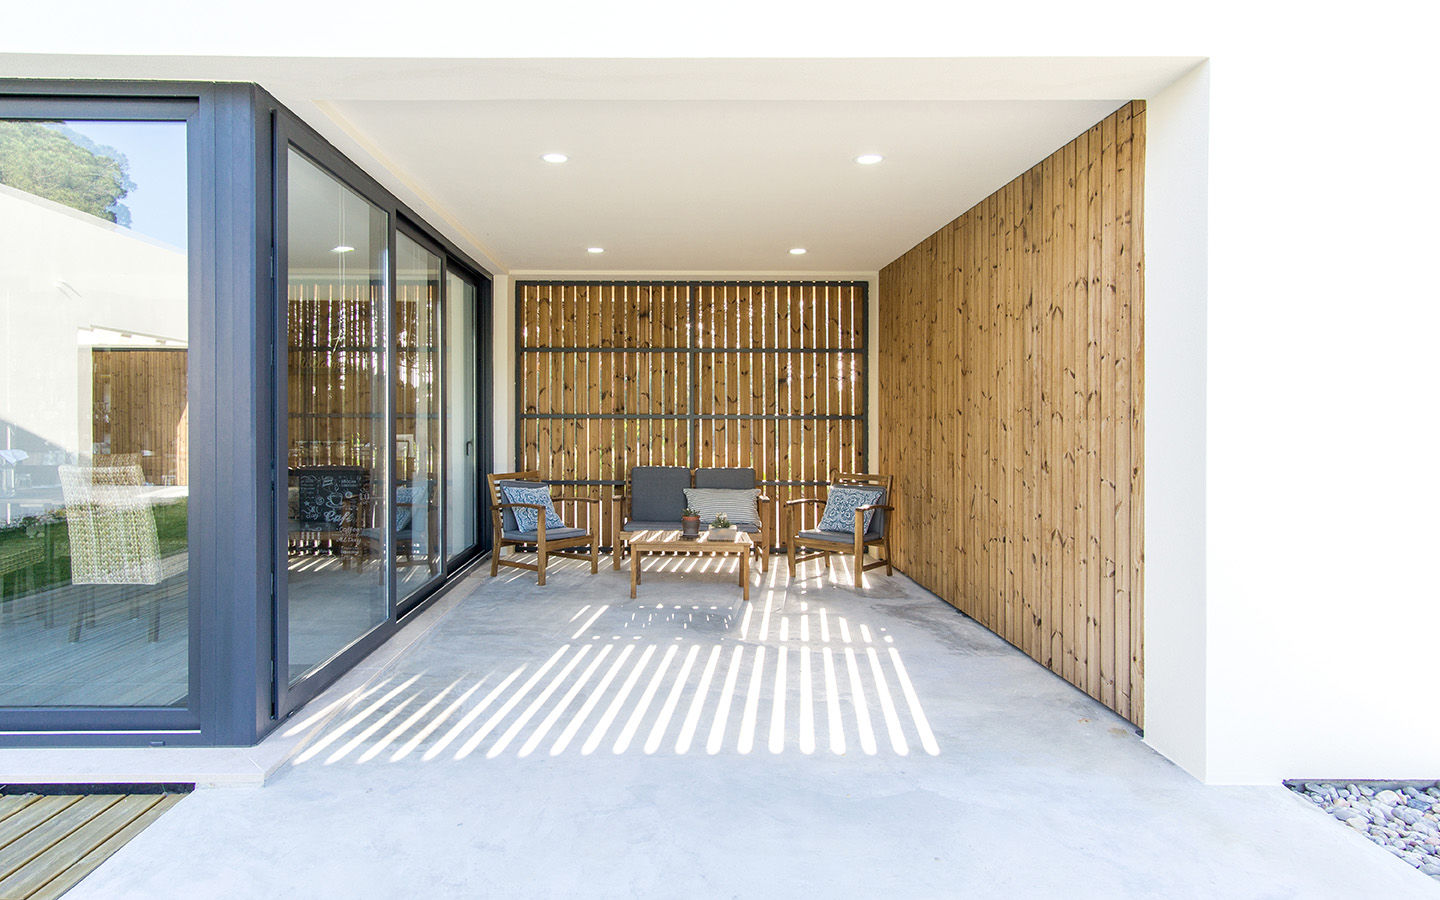 Casa Namu, [i]da arquitectos [i]da arquitectos Balcones y terrazas de estilo moderno Madera Acabado en madera